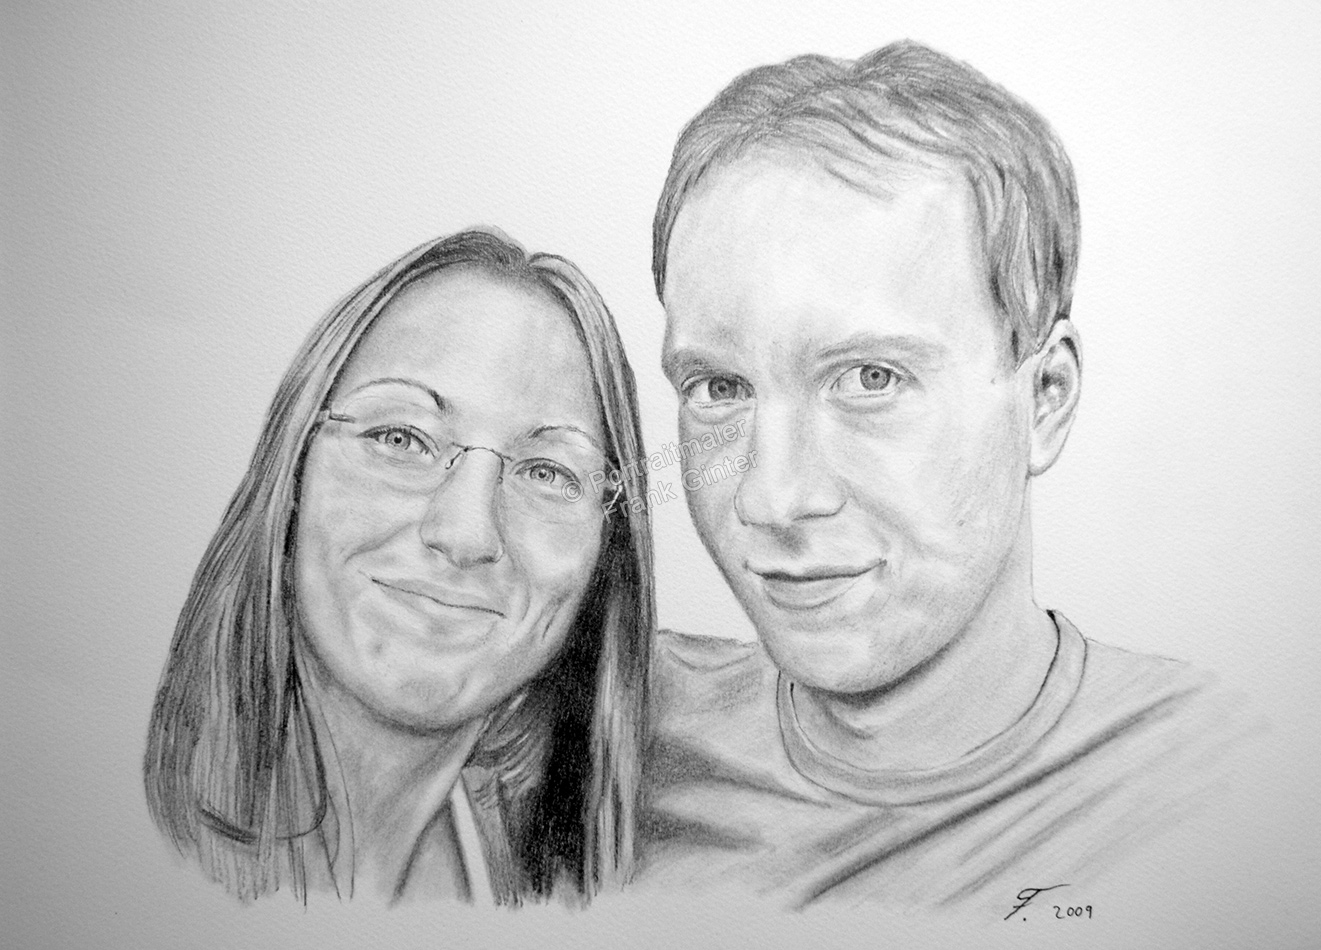 Bleistiftzeichnungen, Portraitzeichnung  von Verliebten, Portrait zeichnen lassen, Mann und Frau Paarzeichnung Paarportrait